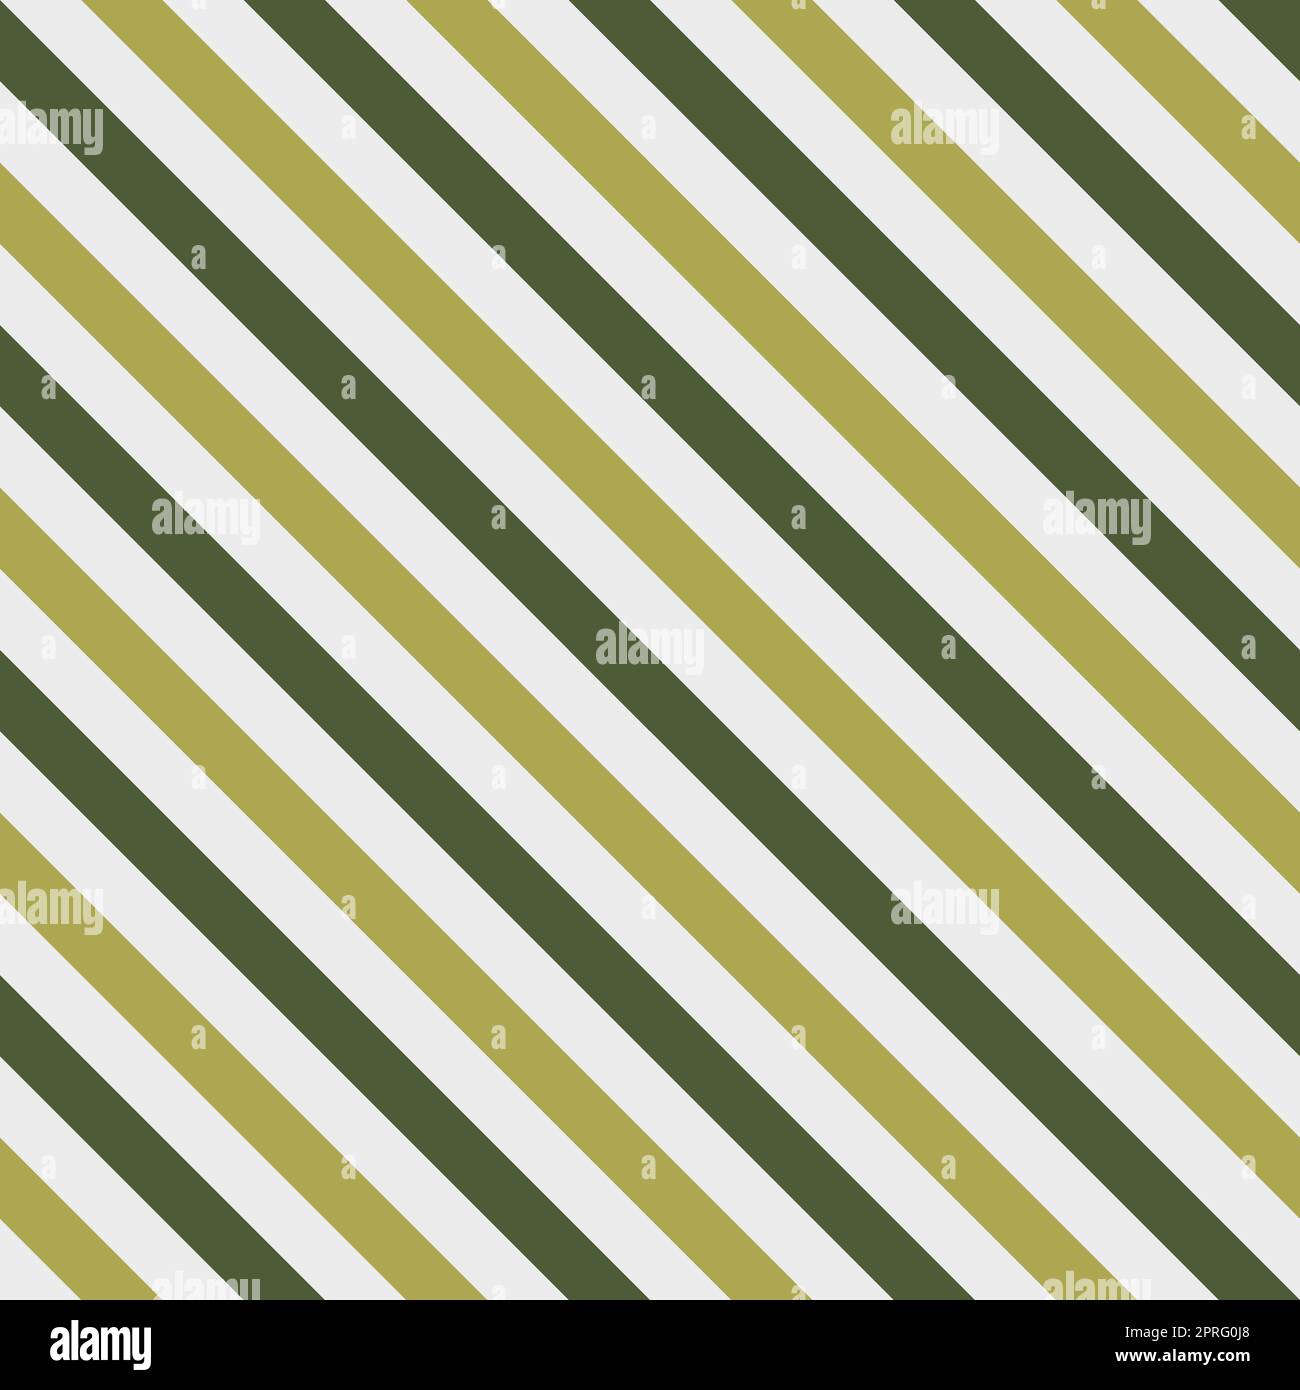 Grüne Farbe und gelber Streifen auf grauem Hintergrund. Muster diagonaler Streifen nahtlos für Grafik-Design, Stoff, Textil, Mode. Stockfoto